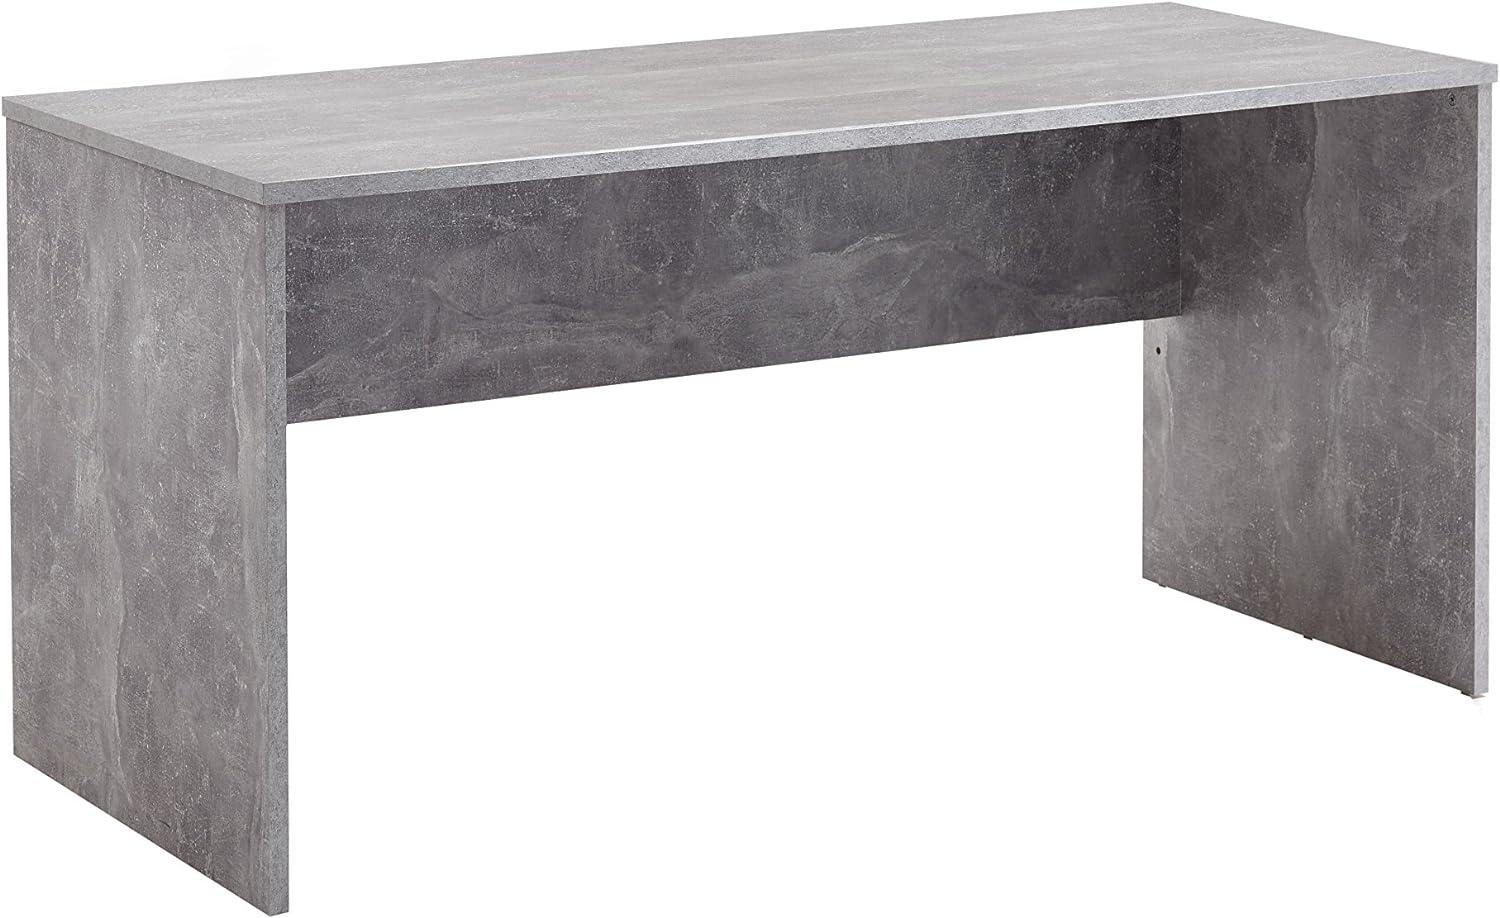 FMD Möbel, 3002-001 Brick 1 Schreibtisch, holz / beton, maße 160. 0 x 68. 0 x 75. 5 cm Bild 1